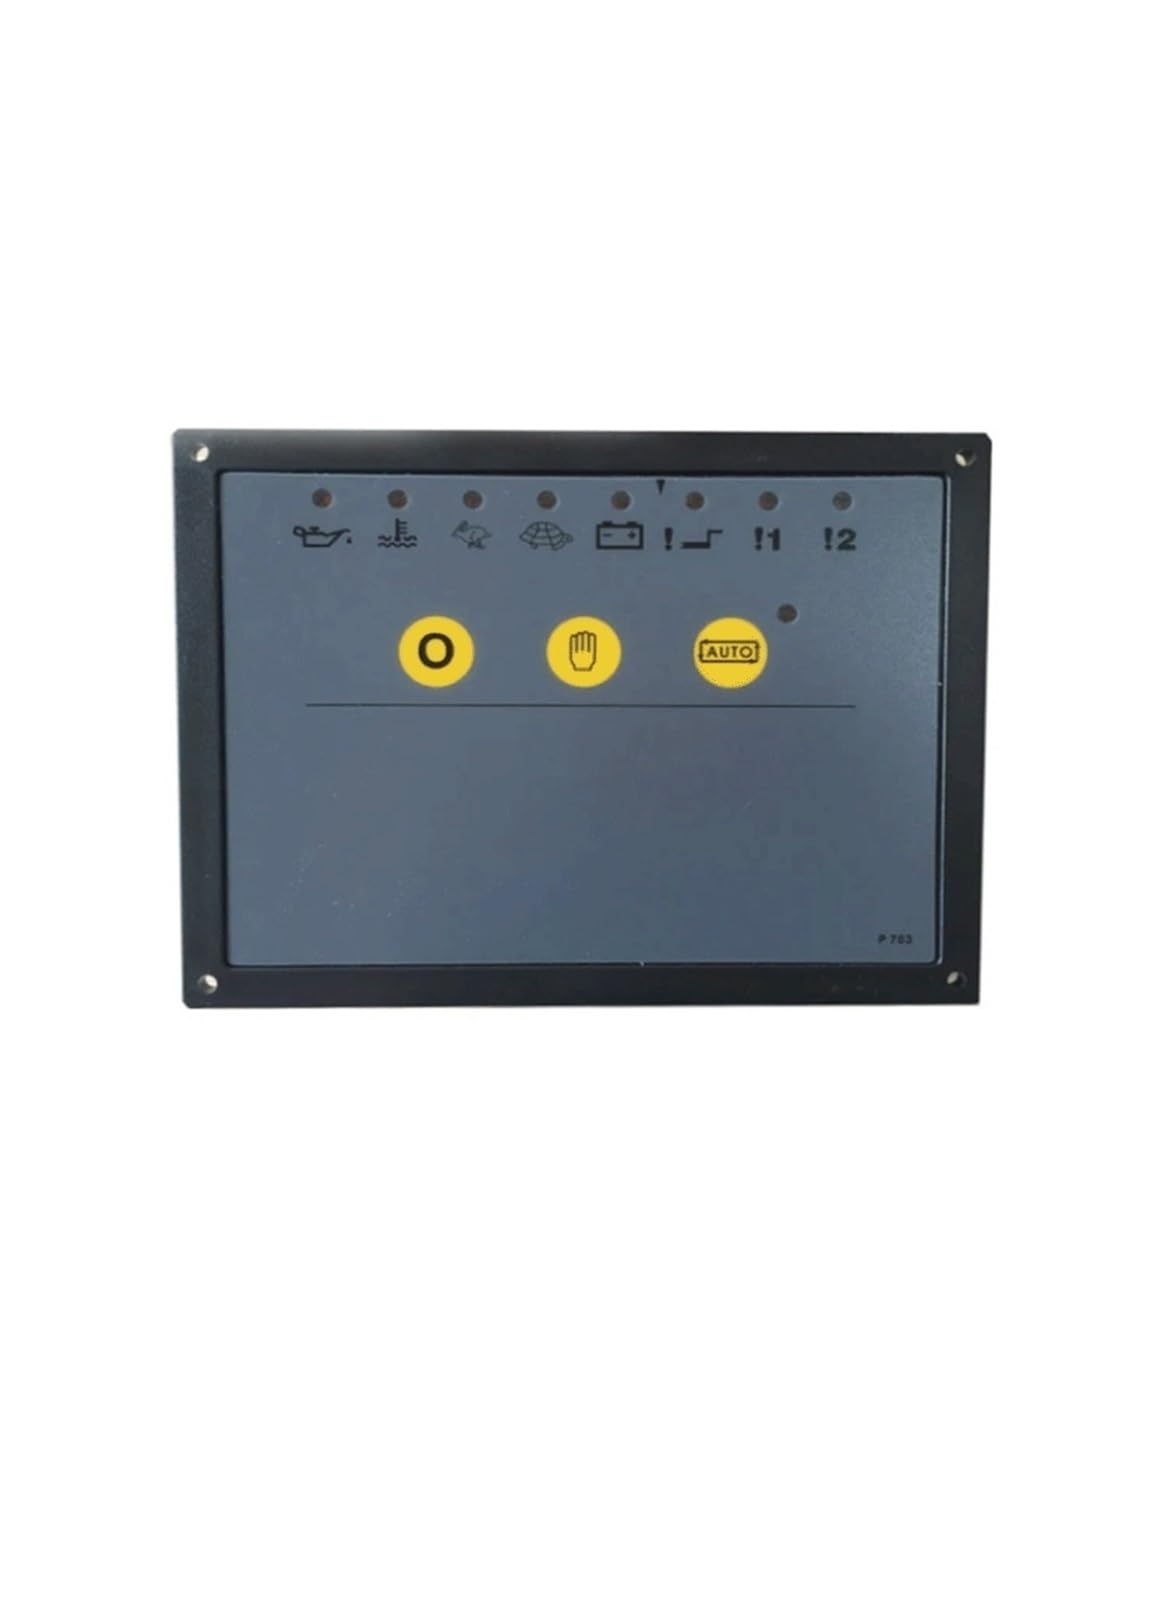 Generator Controller Generatorsatz-Steuerung - 703, 704, 705 - Bedienfeld for automatisches Starten der Stromerzeugung(703) von PKHDLYEU